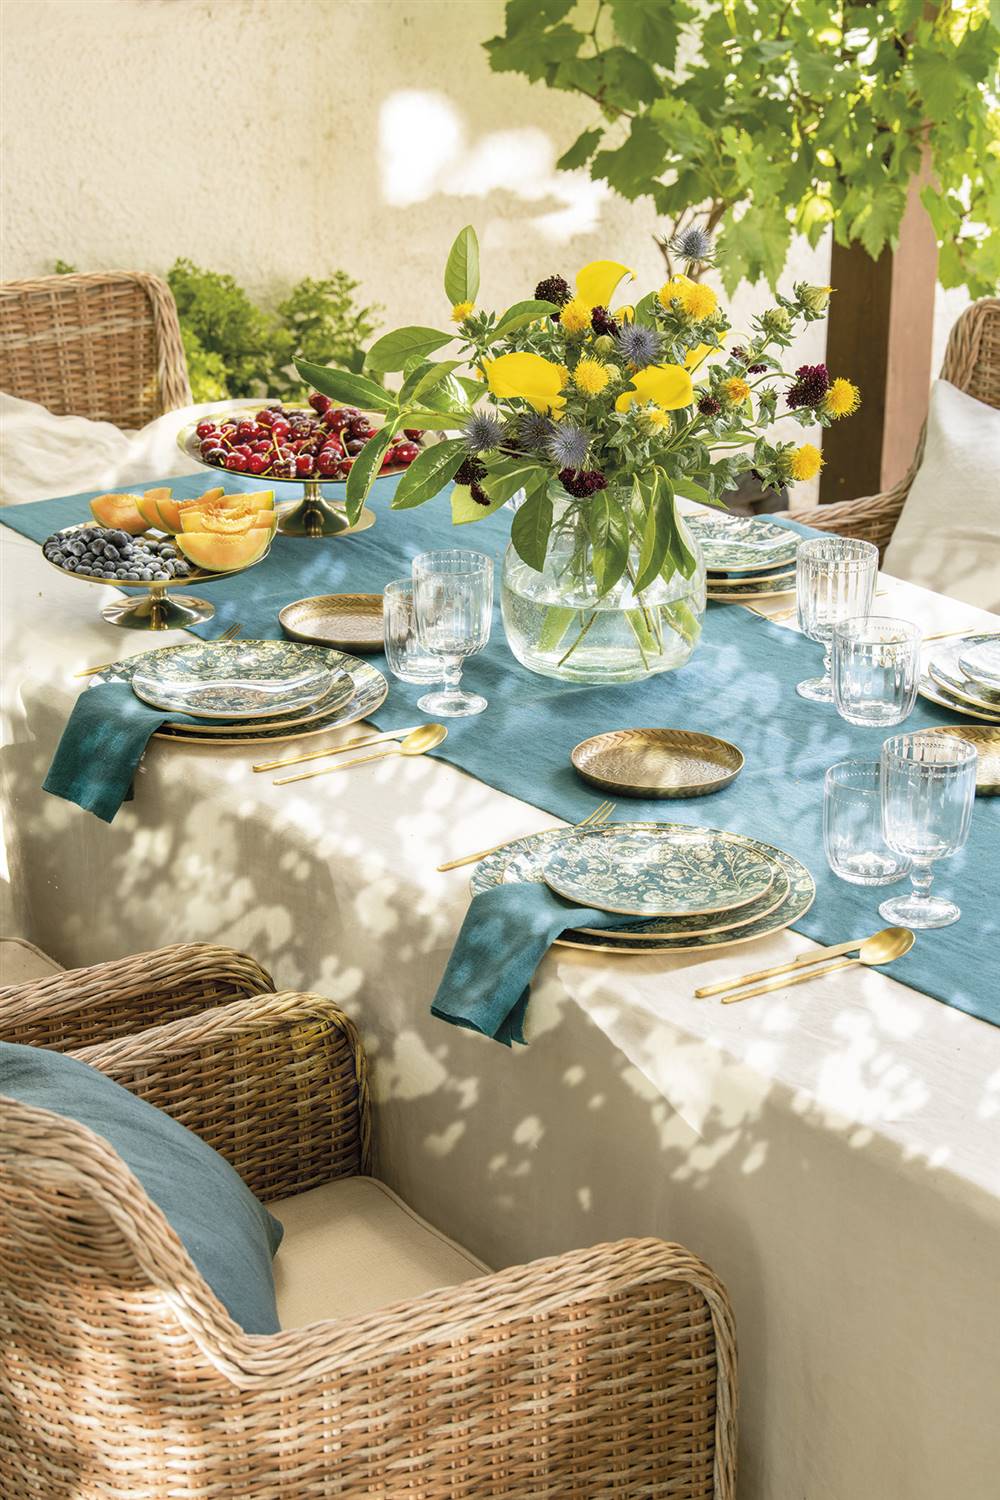 Un look de mesa elegante para las comidas con amigos este verano.